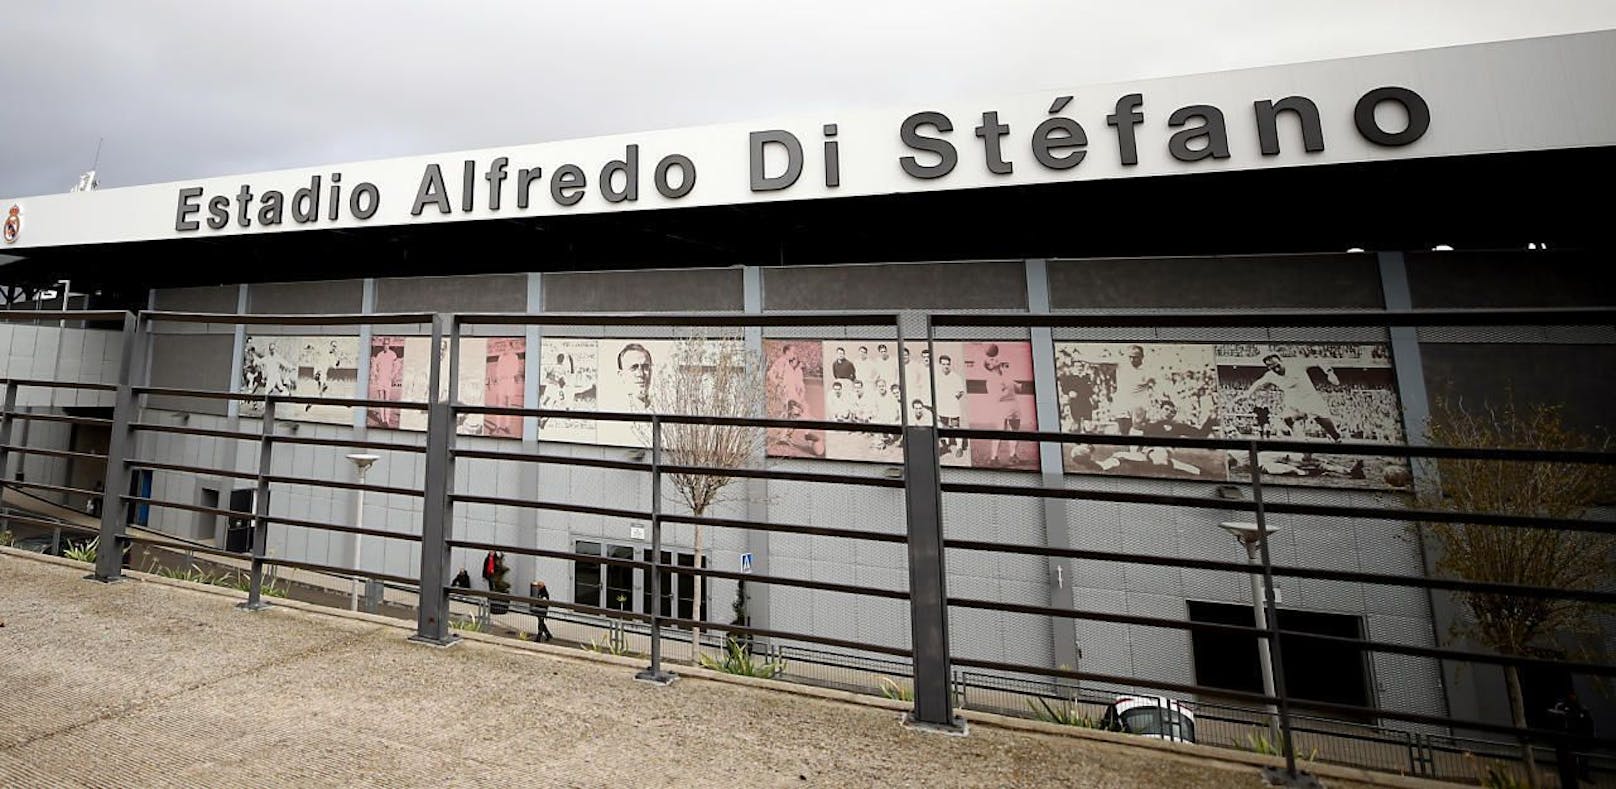 Das Estadio Alfredo Di Stefano kann in Sachen Größe sichtbar nicht mit dem Bernabeu mithalten. 